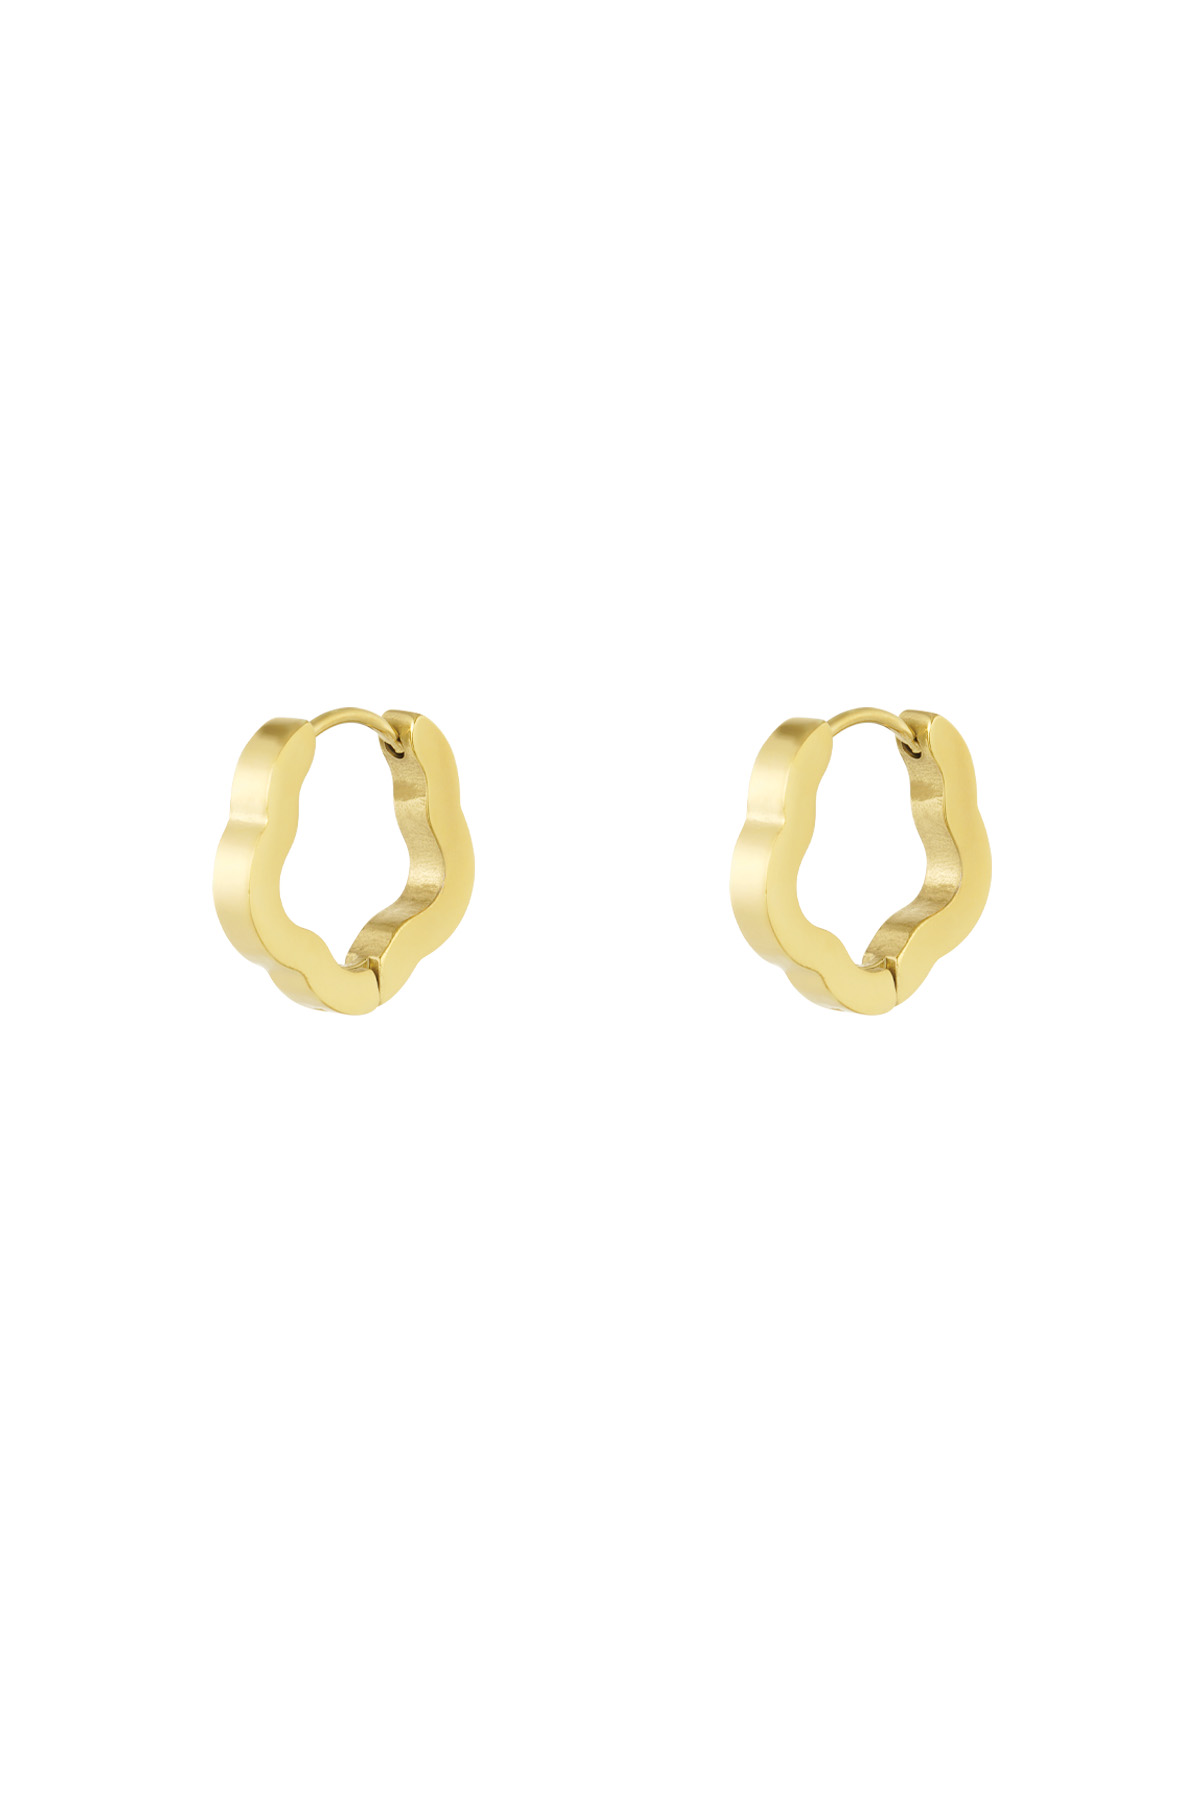 Basic flower shape earrings small - gold  